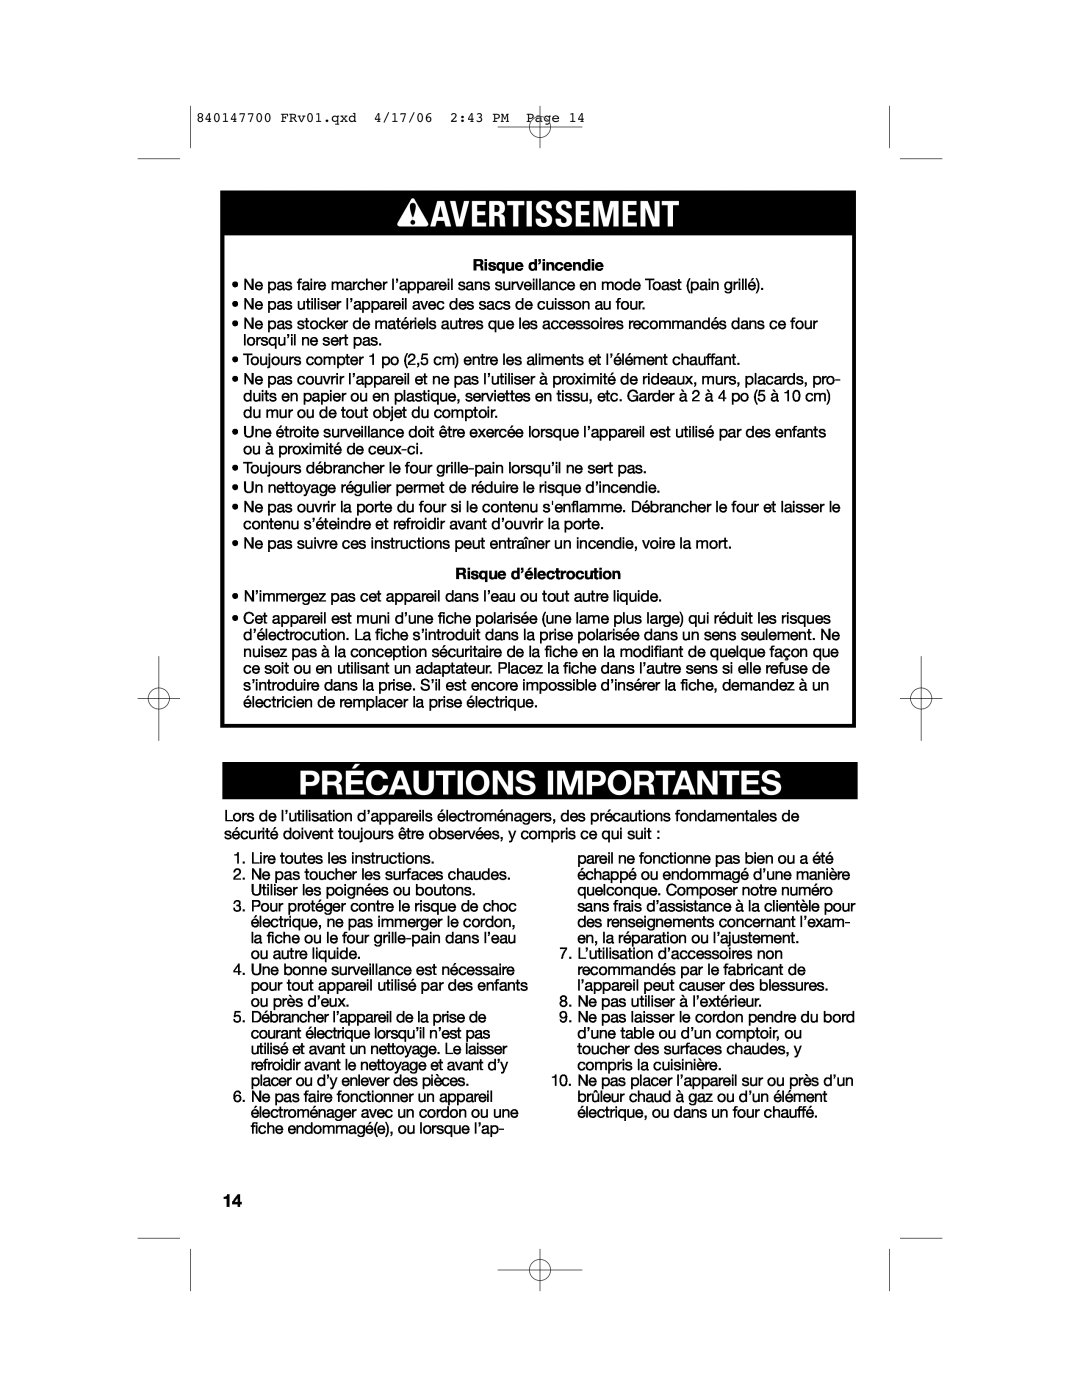 Hamilton Beach 31180 manual wAVERTISSEMENT, Précautions Importantes 